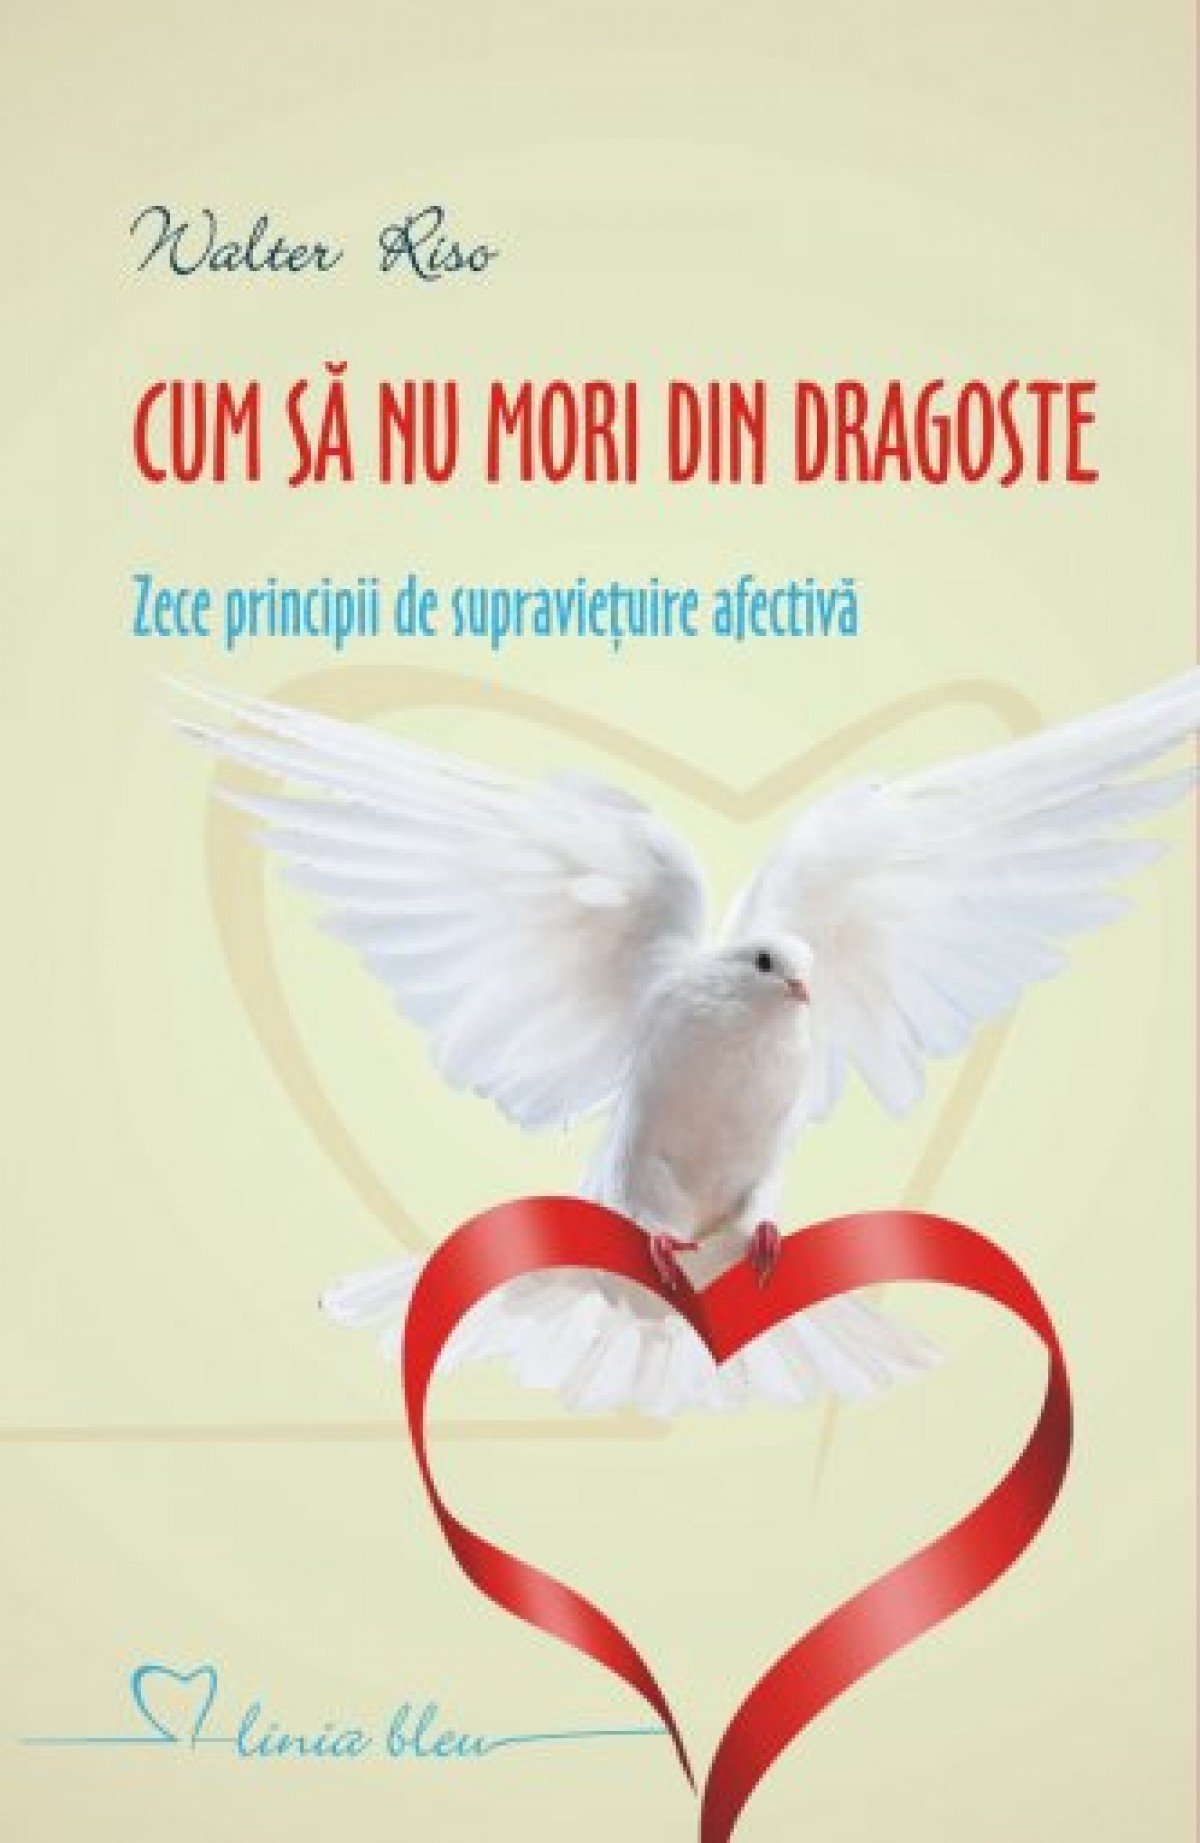 Walter Riso - Cum Să Nu Mori Din Dragoste descarcă cărți bune online gratis PDF 📖